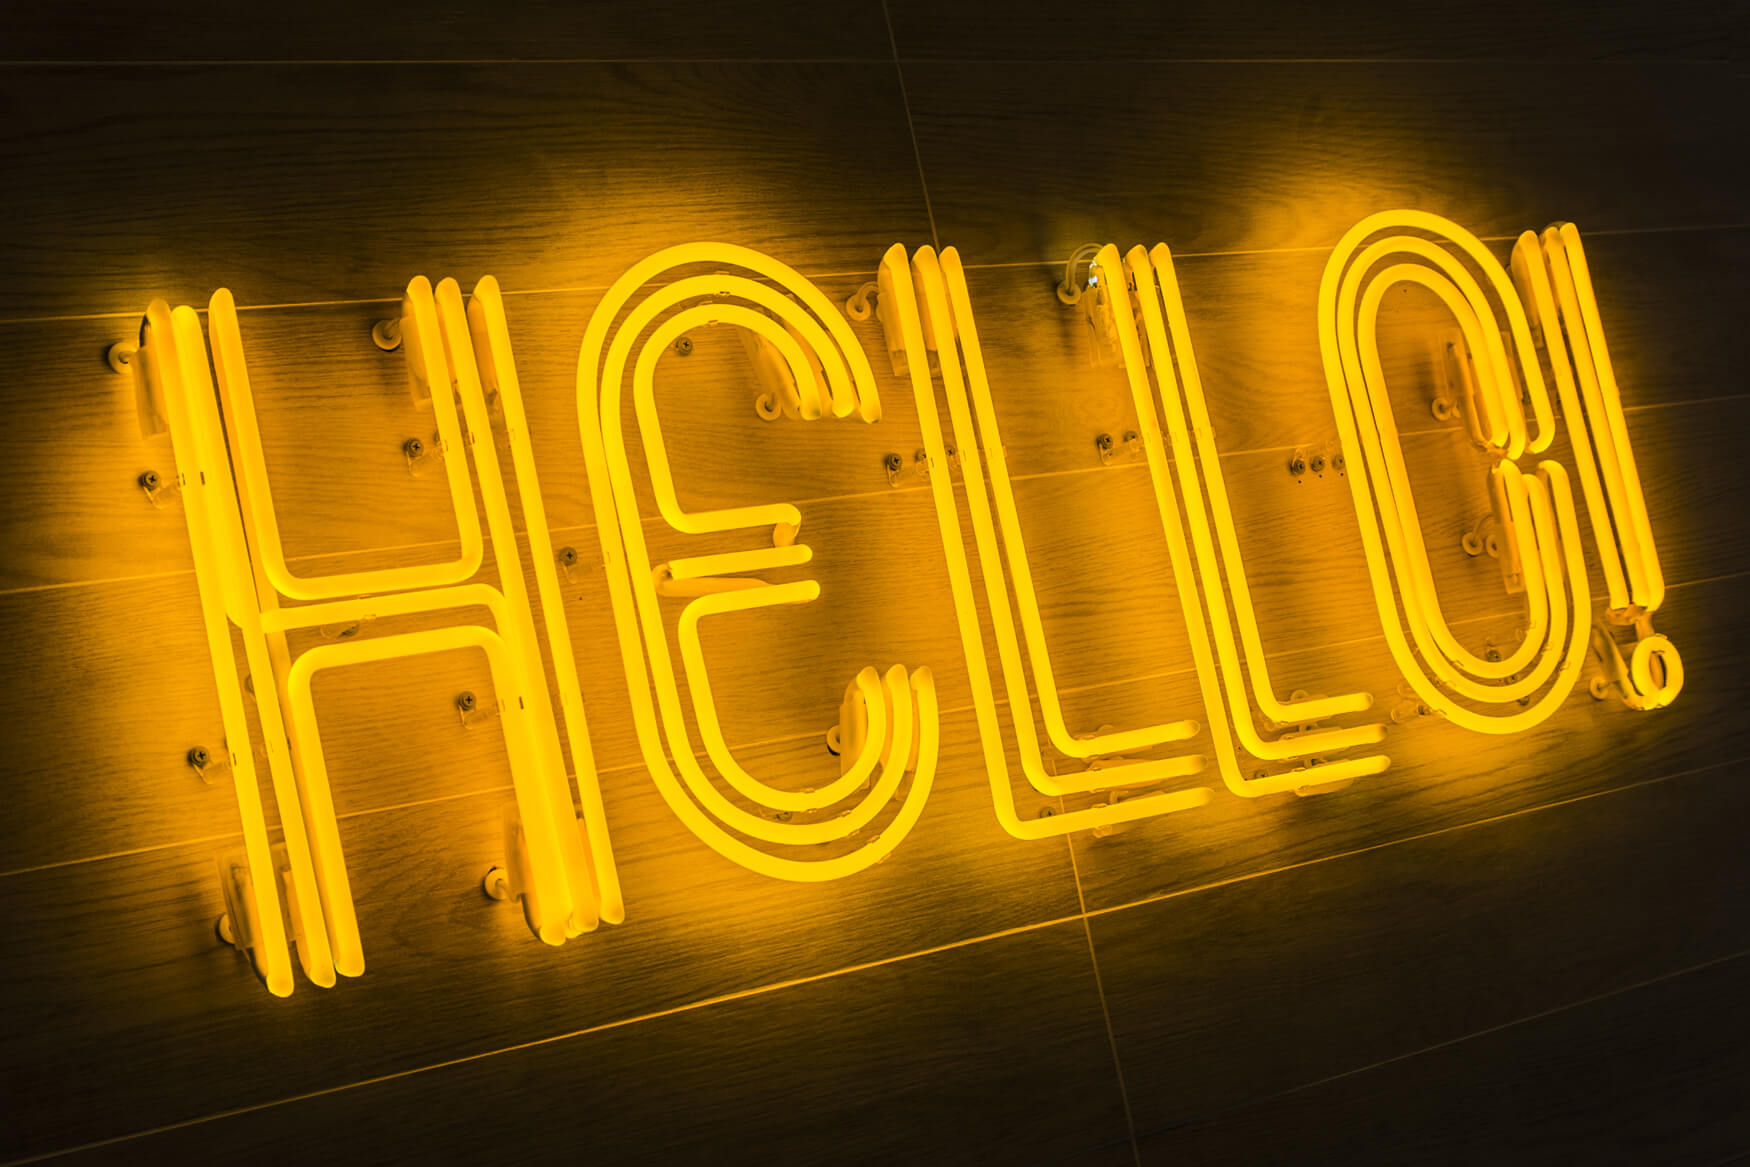 HELLO HELO - hello-neon-helo-kolor-żółty-neony-szklane-neon-neon-poland-neon-na-kafelkach-neon-na-panelach-na-scianie-neon-w-lobby-neon-w-biurowcu-neon-trojmiasto-pl